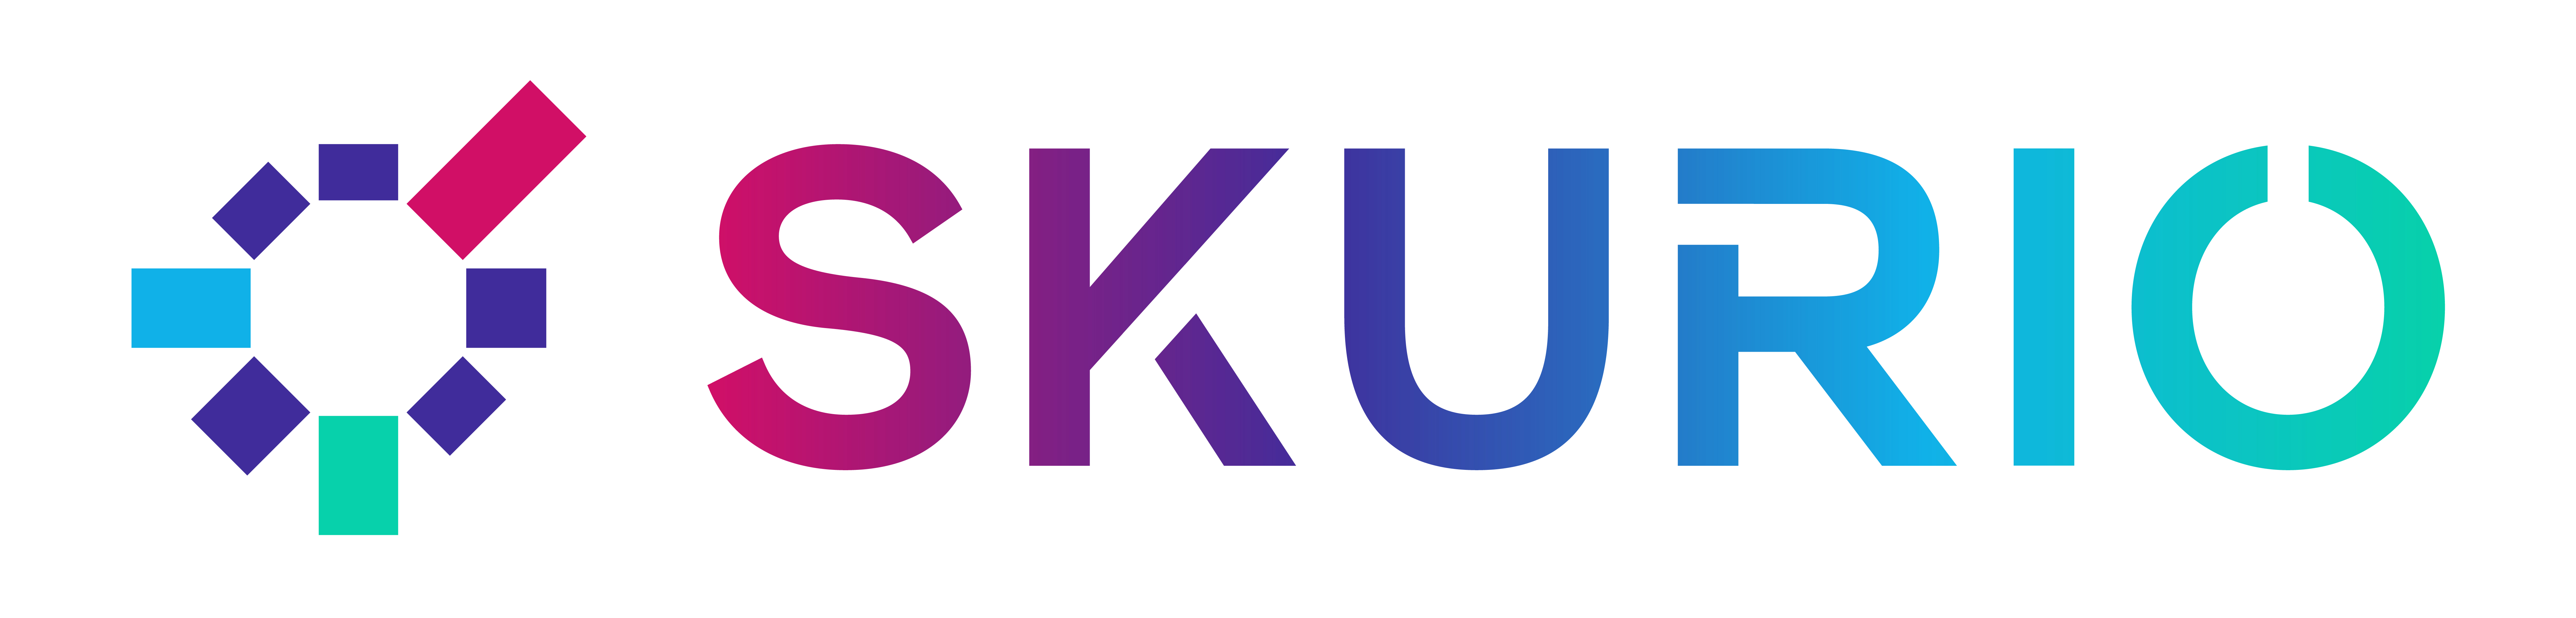 SKURIO_Logo & Wordmark Lockup_spectrum_RGB